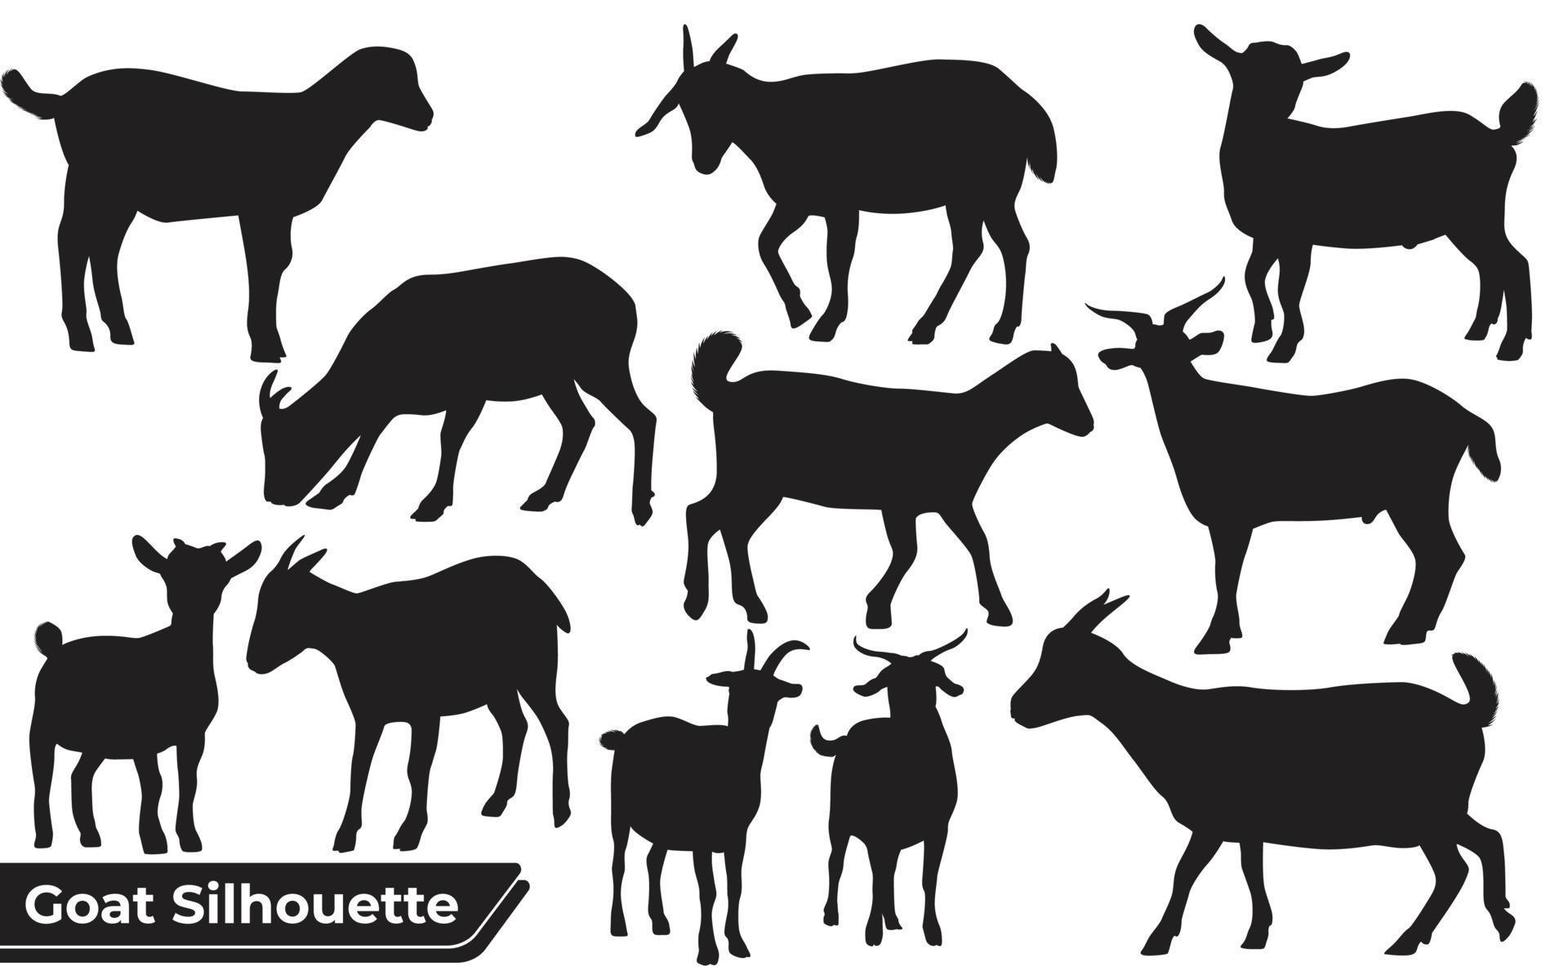 verzameling geitensilhouet in verschillende poses vector